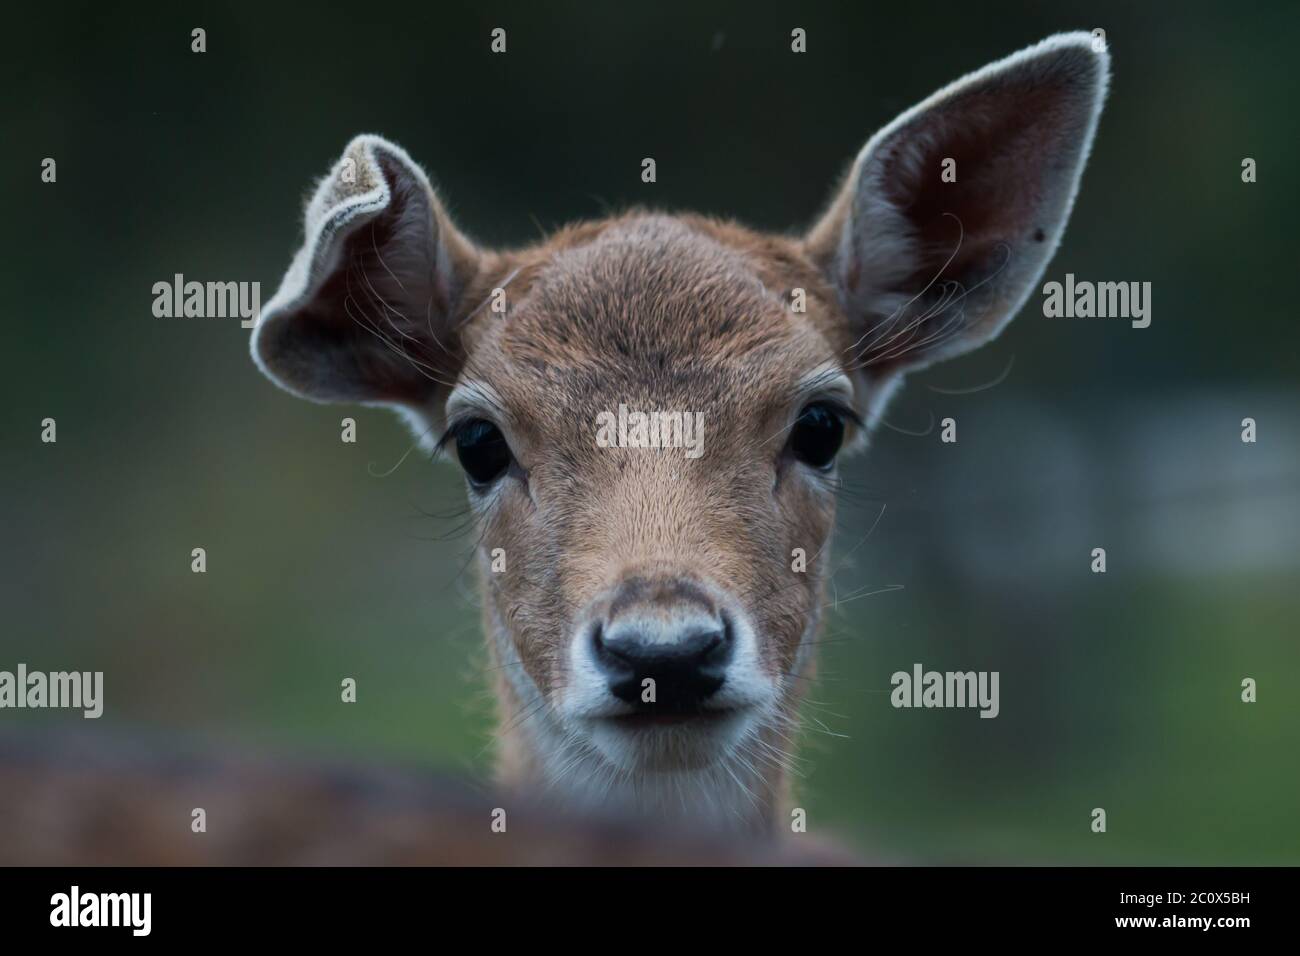 Retrato de un joven ciervo barbecho (Dama dama) que dobla su oreja derecha Foto de stock